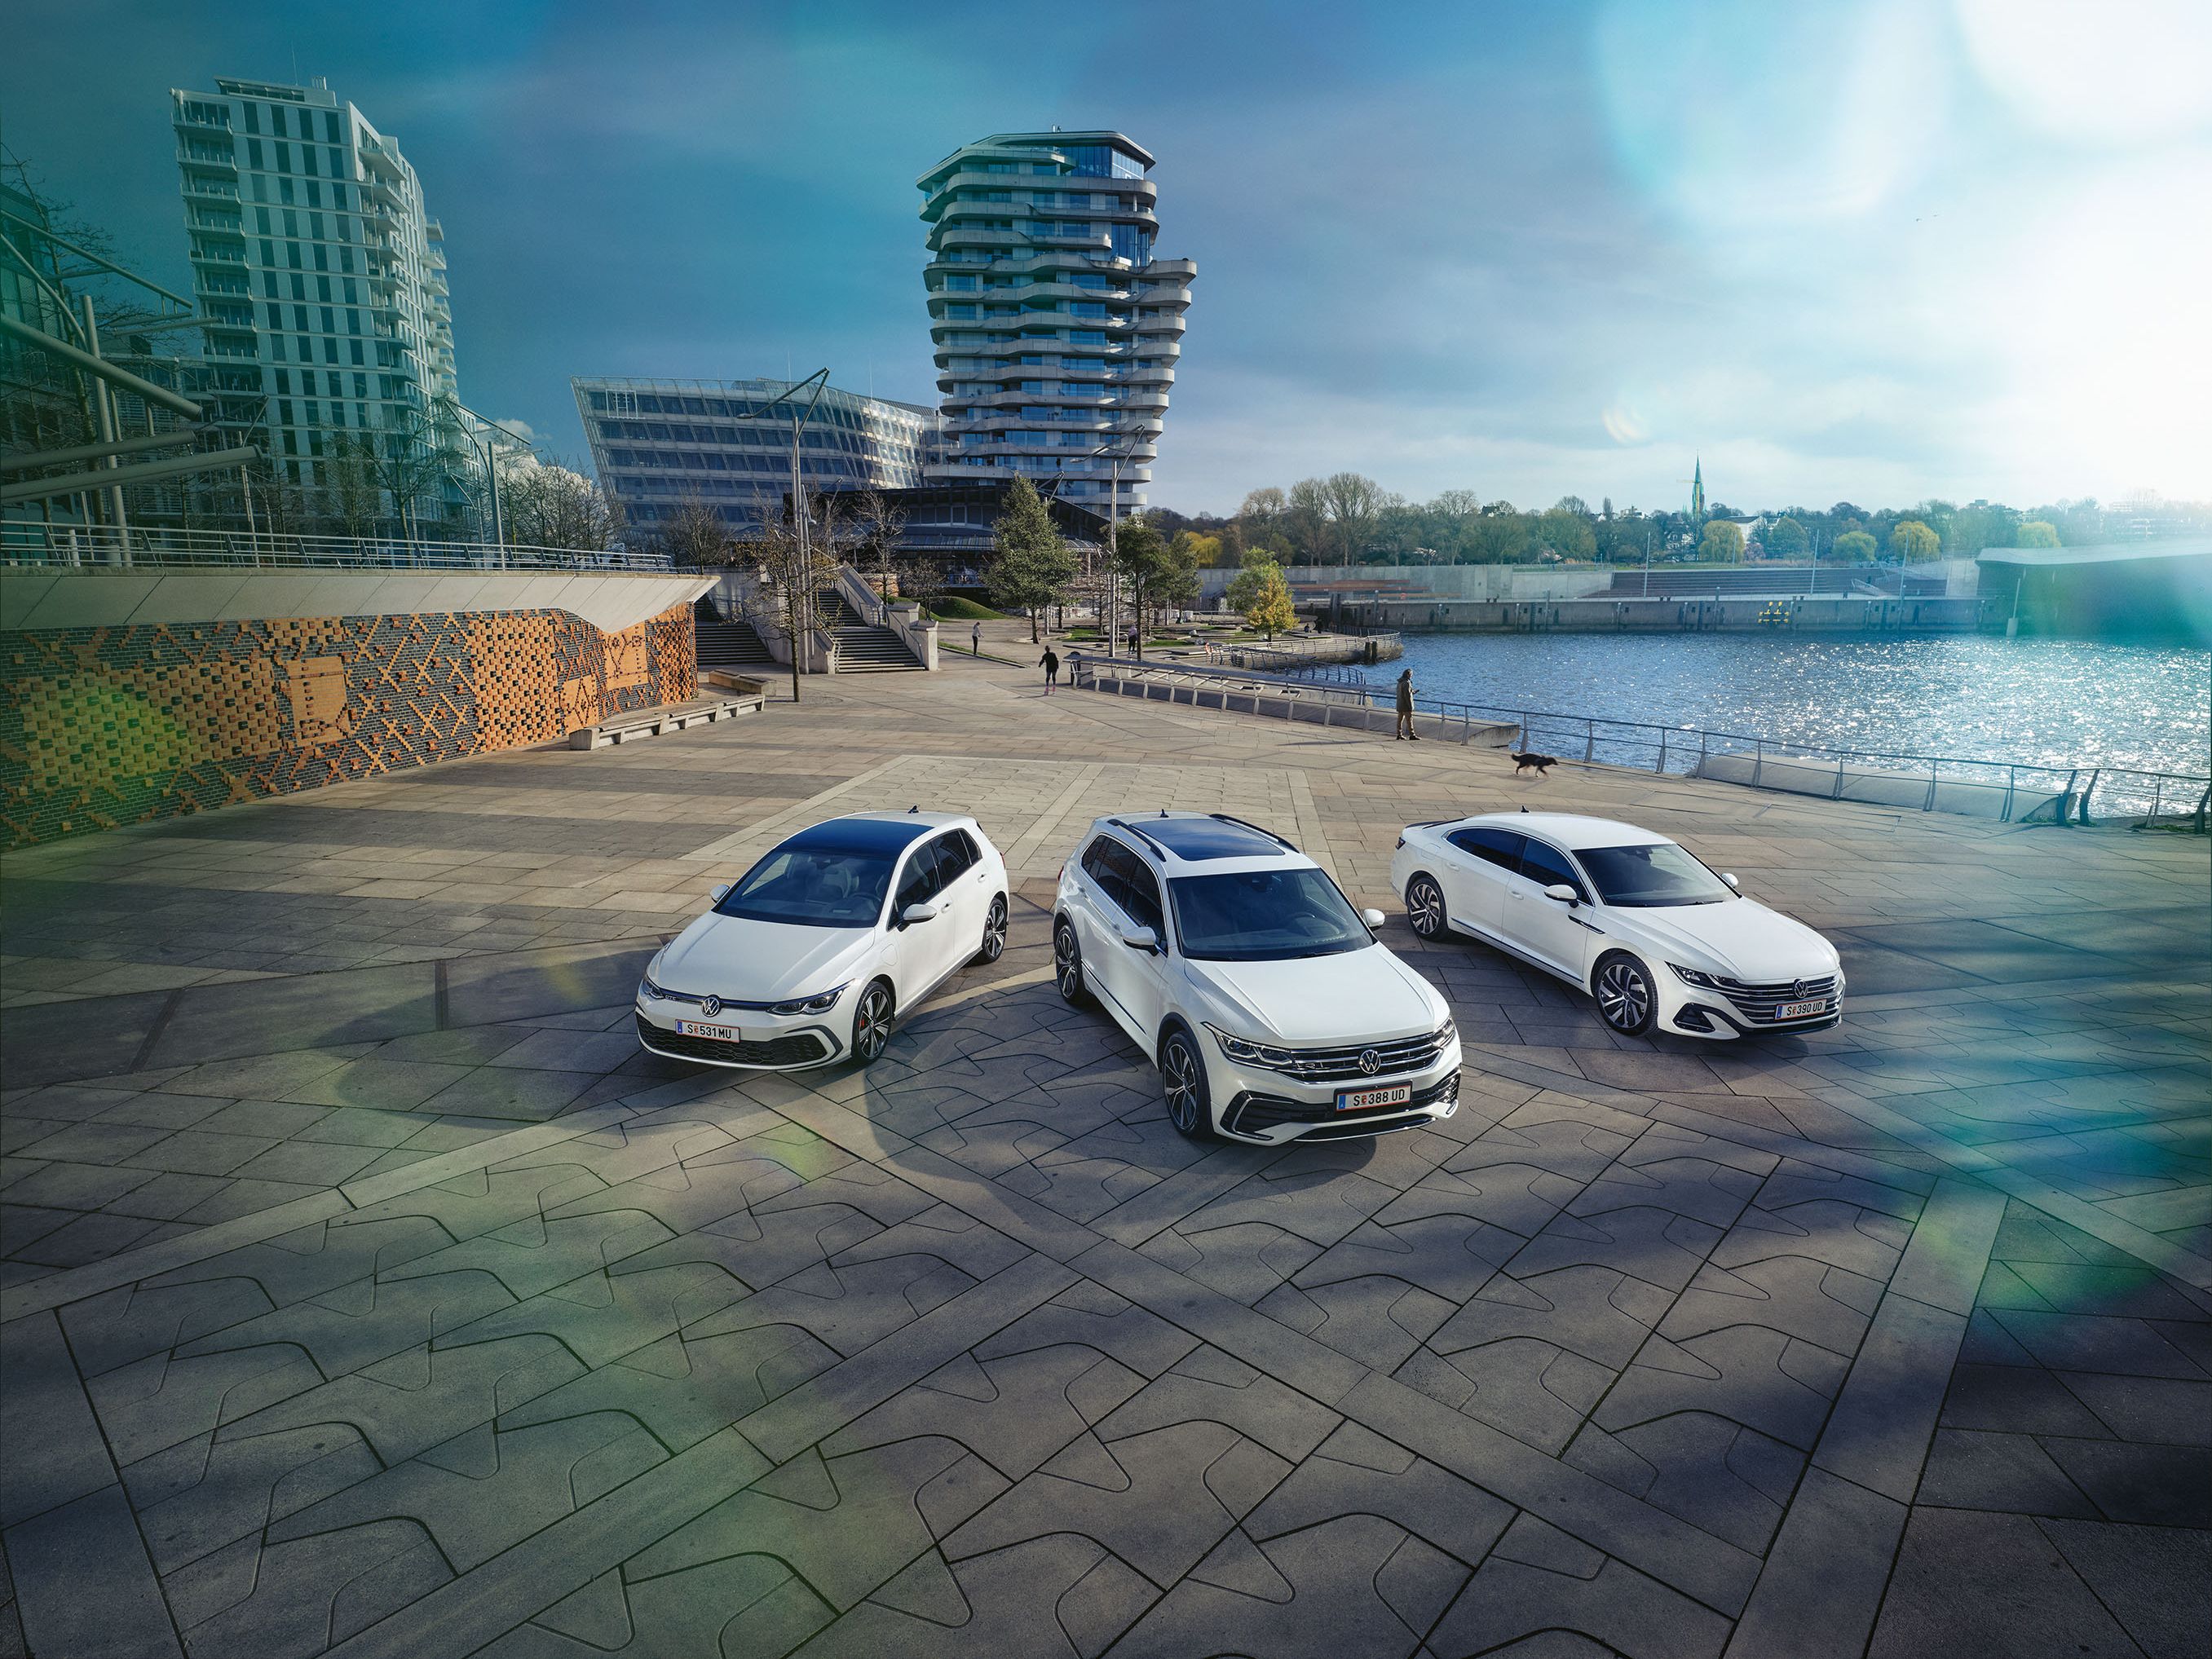 drei VW Neuwagen geparkt am Hafengelände - Golf, Tiguan, Arteon